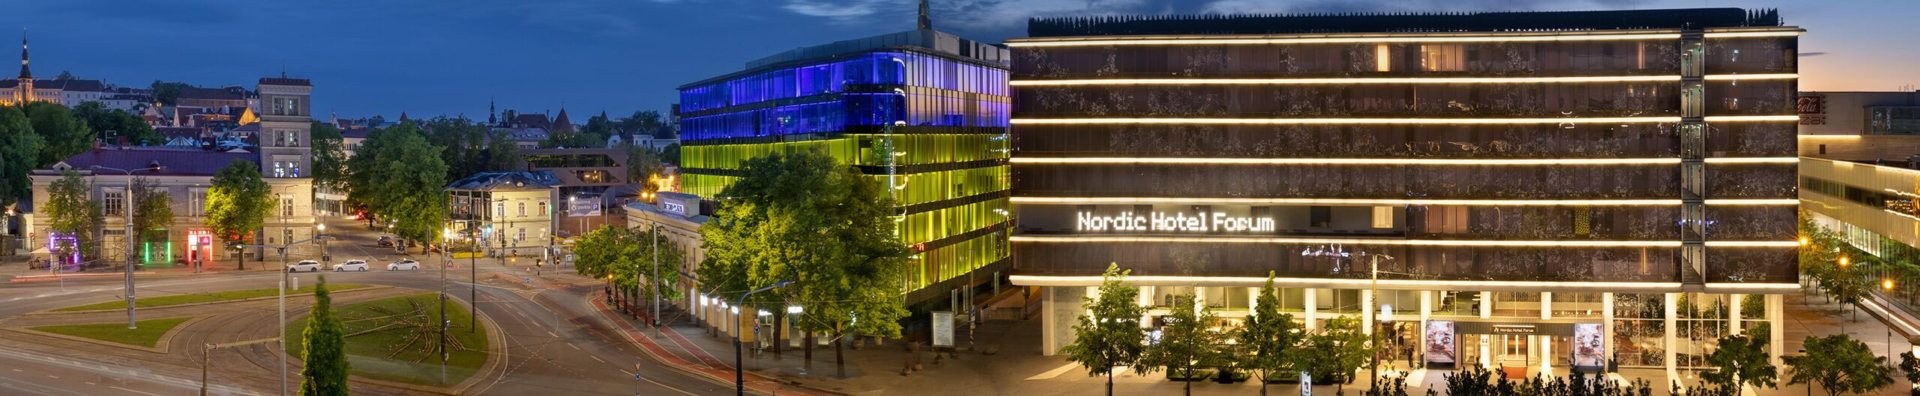 Nordic Hotel Forum